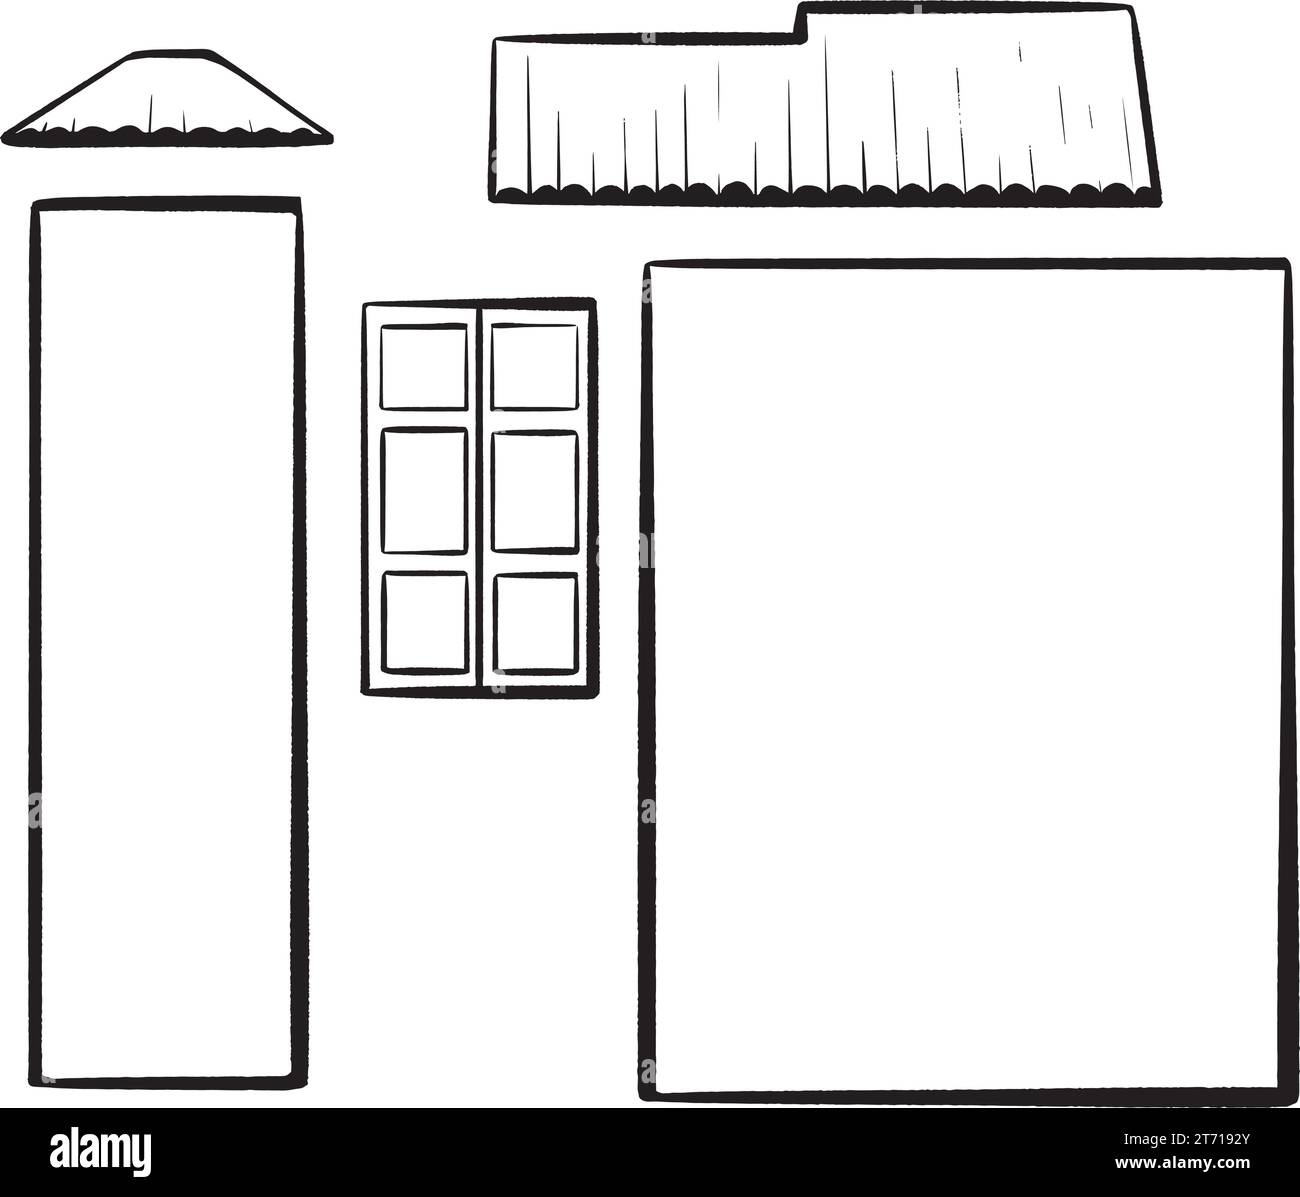 Tinte Hand gezeichneter Vektor. Konstruktor-Set mit Elementen zum Zusammenbauen eines Hauses. Wände mit verschiedenen Volumina, Fenster, Türen, dreieckiges Dach mit mehrstöckigem Dach. Für Stock Vektor